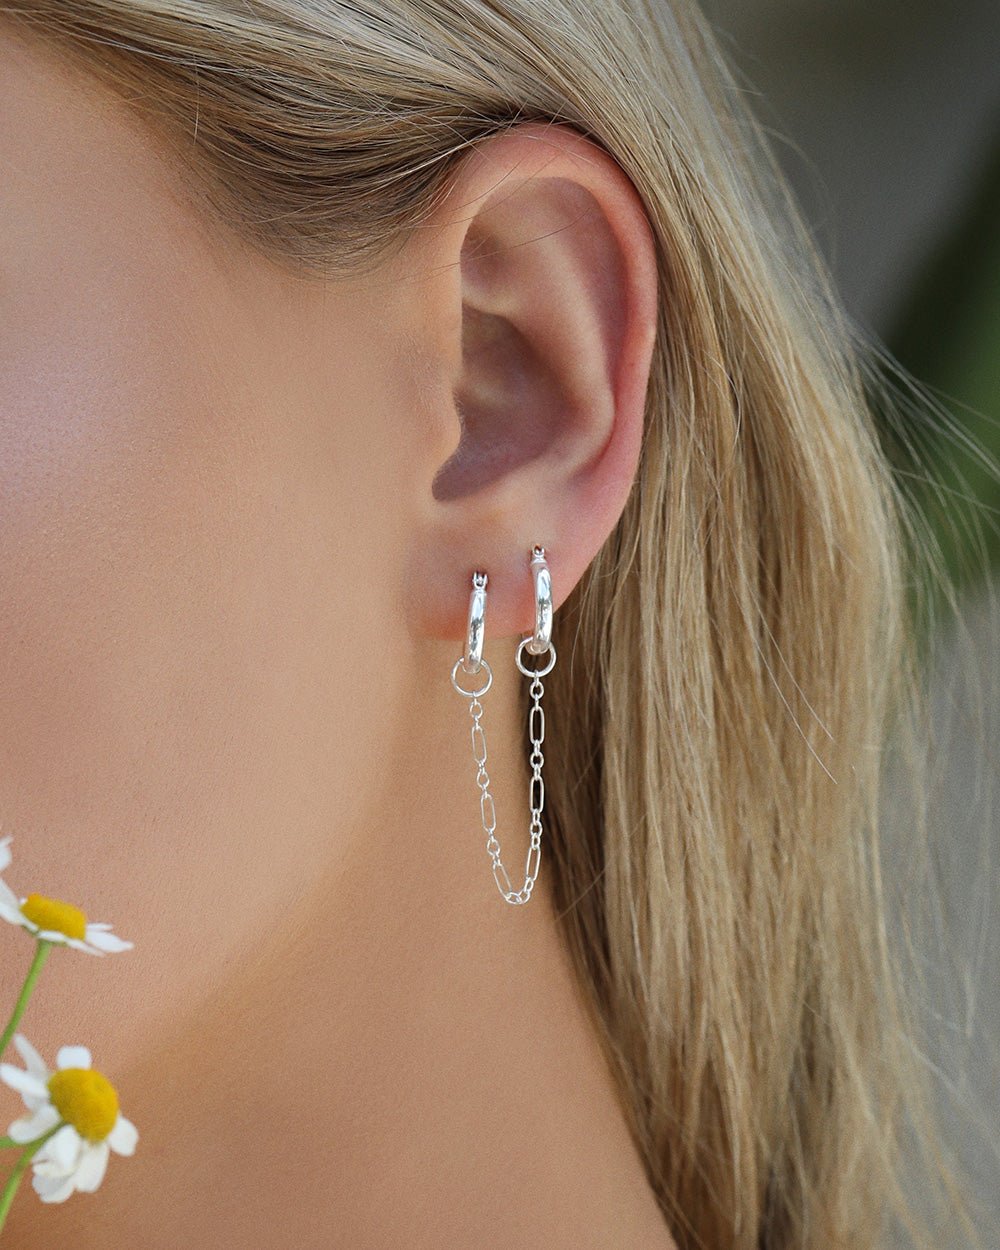 Share 156 sterling silver piercing earrings  seveneduvn